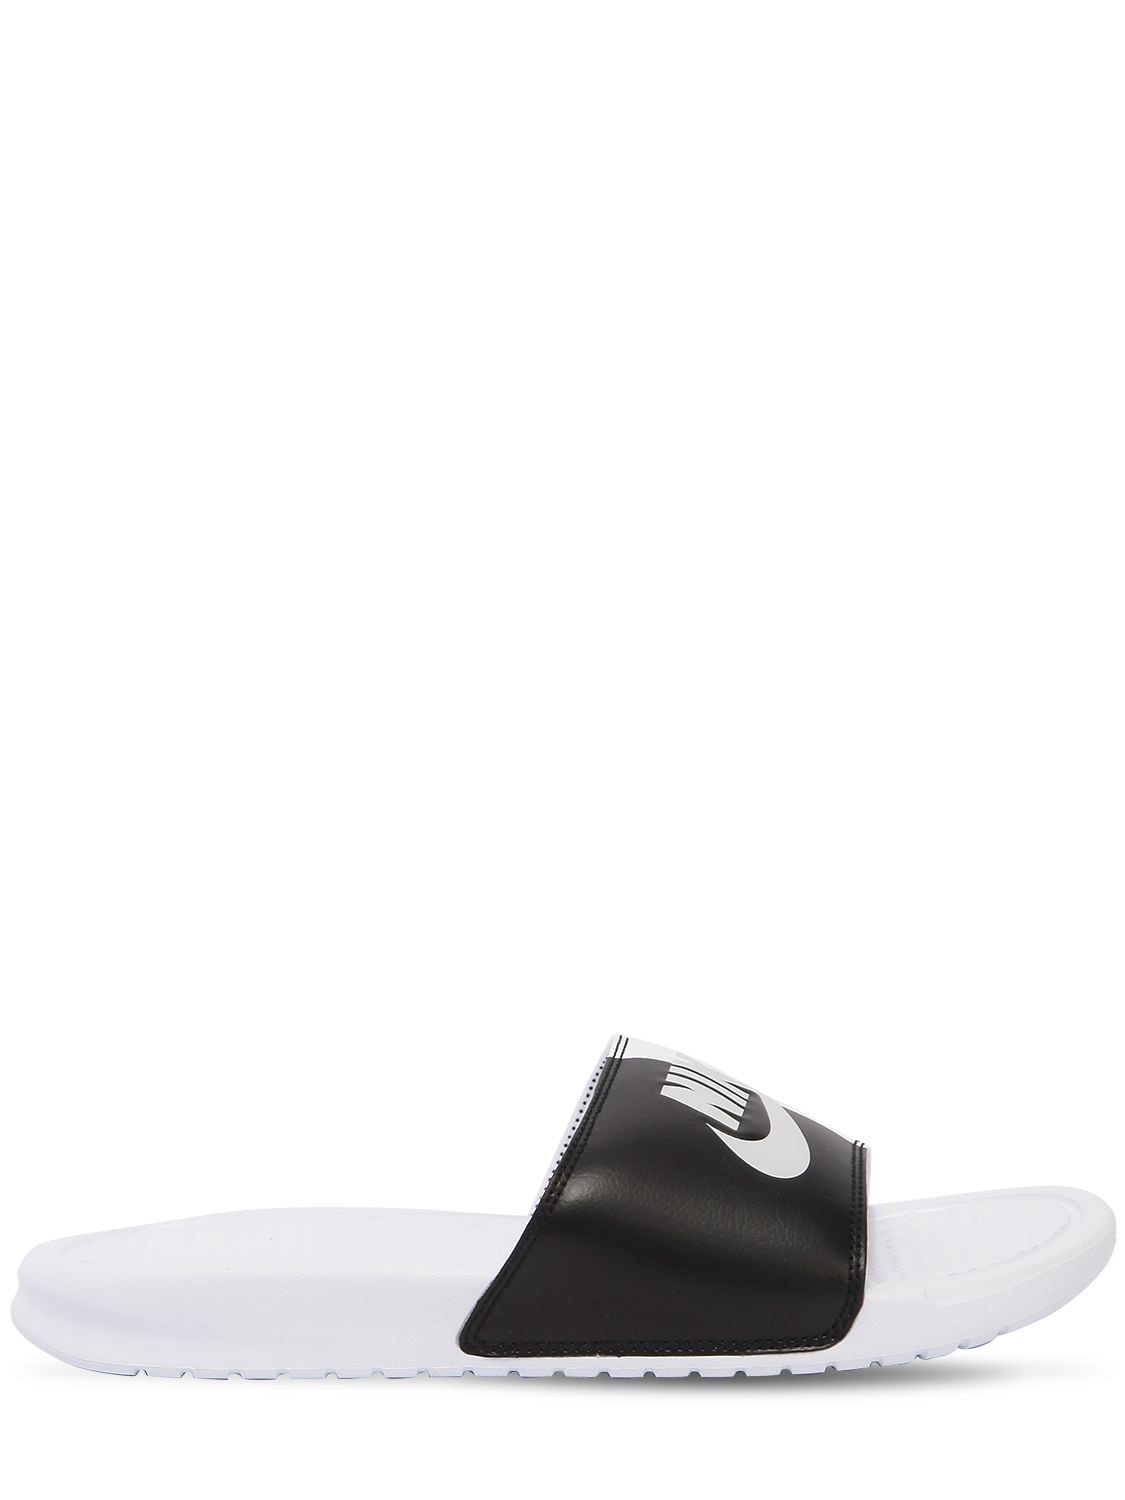 Nike Benassi Jdi Slide Sandals In White/black